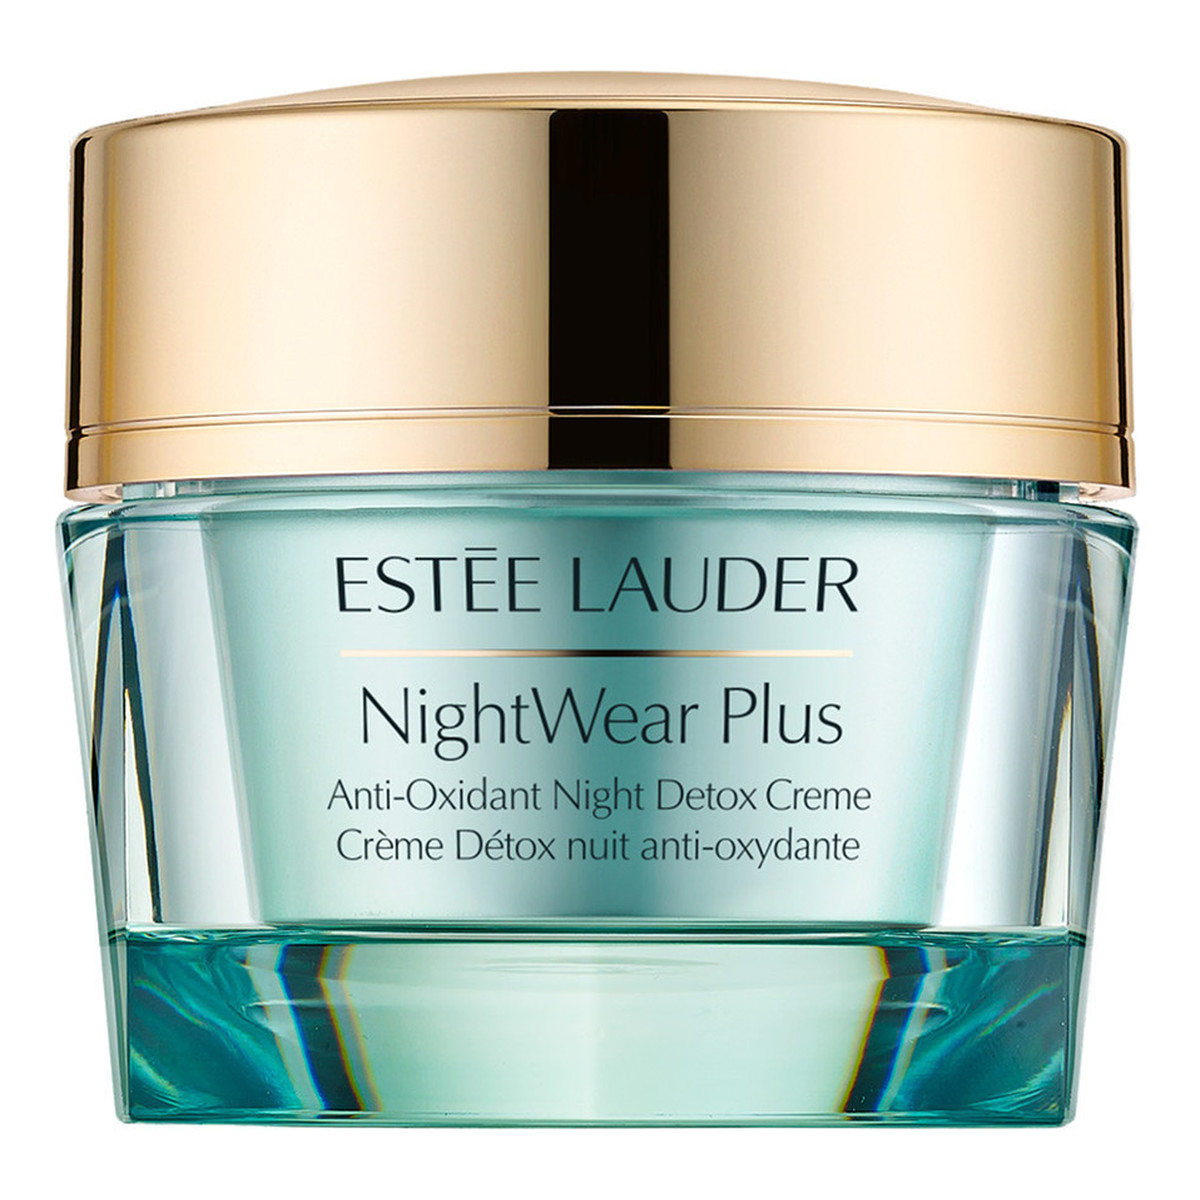 Estee Lauder Night Wear Plus Anti-Oxidant Night Detox Creme Oczyszczający krem do twarzy na noc 50ml